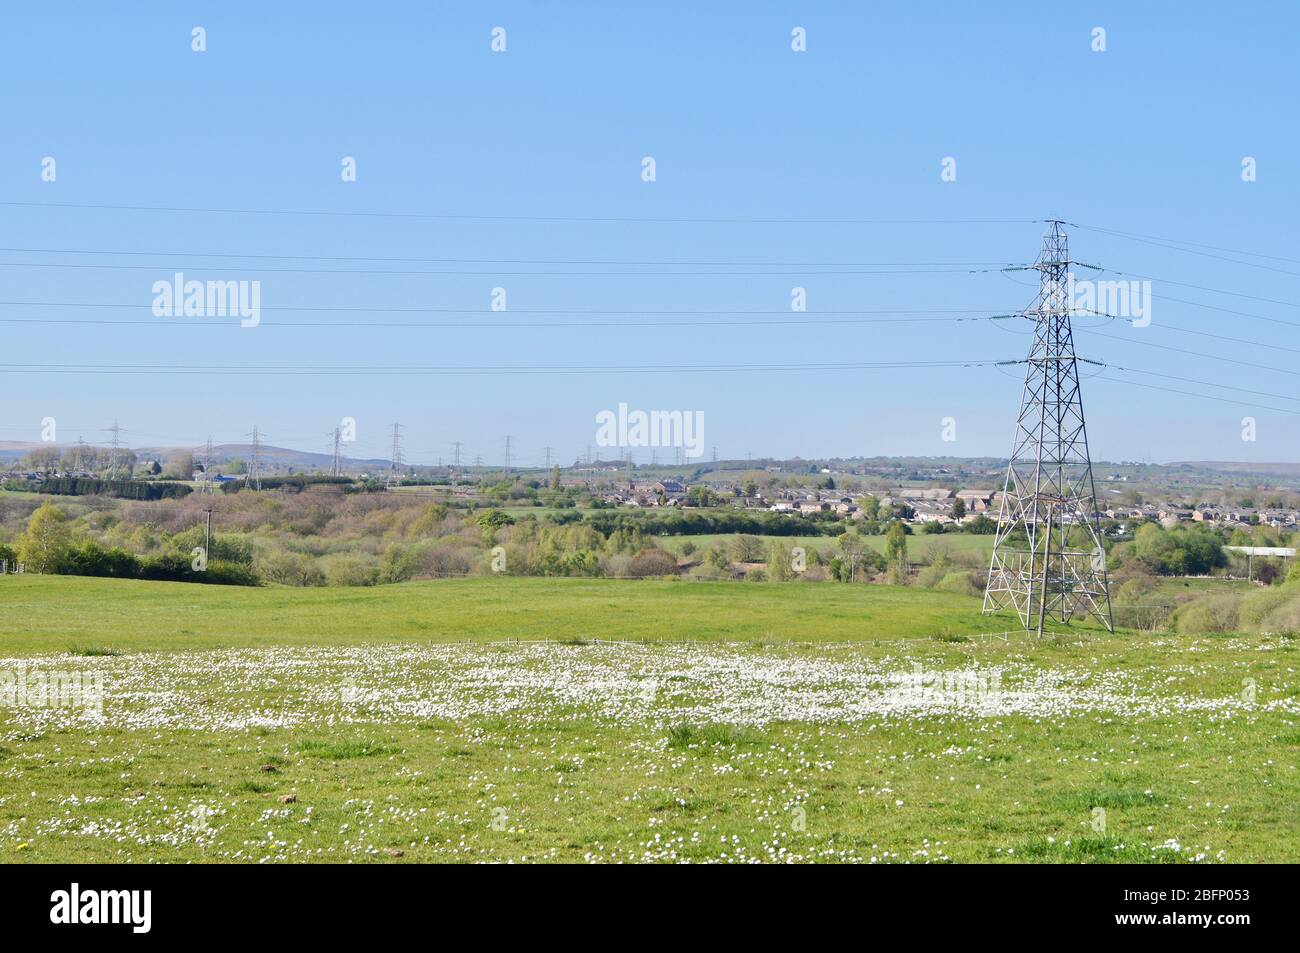 Campo pittoresco con margherite e tralicci sullo sfondo in una città dell'inglese settentrionale - passeggiata vagabondare erba daisy primavera caldo Foto Stock